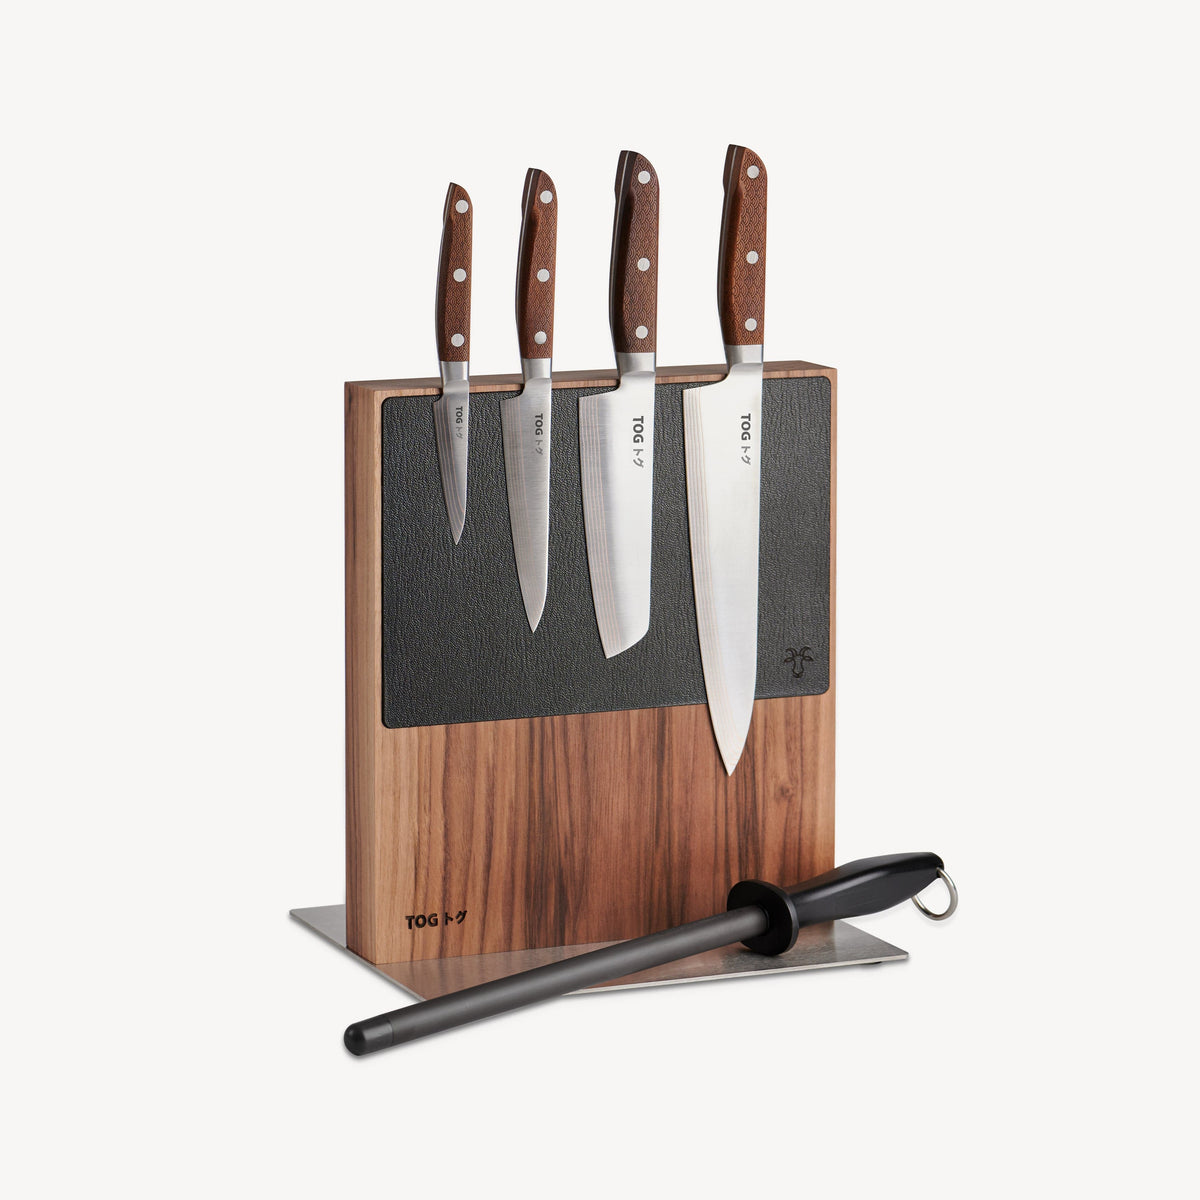 Kyoku 5pc Japanese Kitchen Knife Block Set  Great for a Home Kitchen –  Kyoku Knives